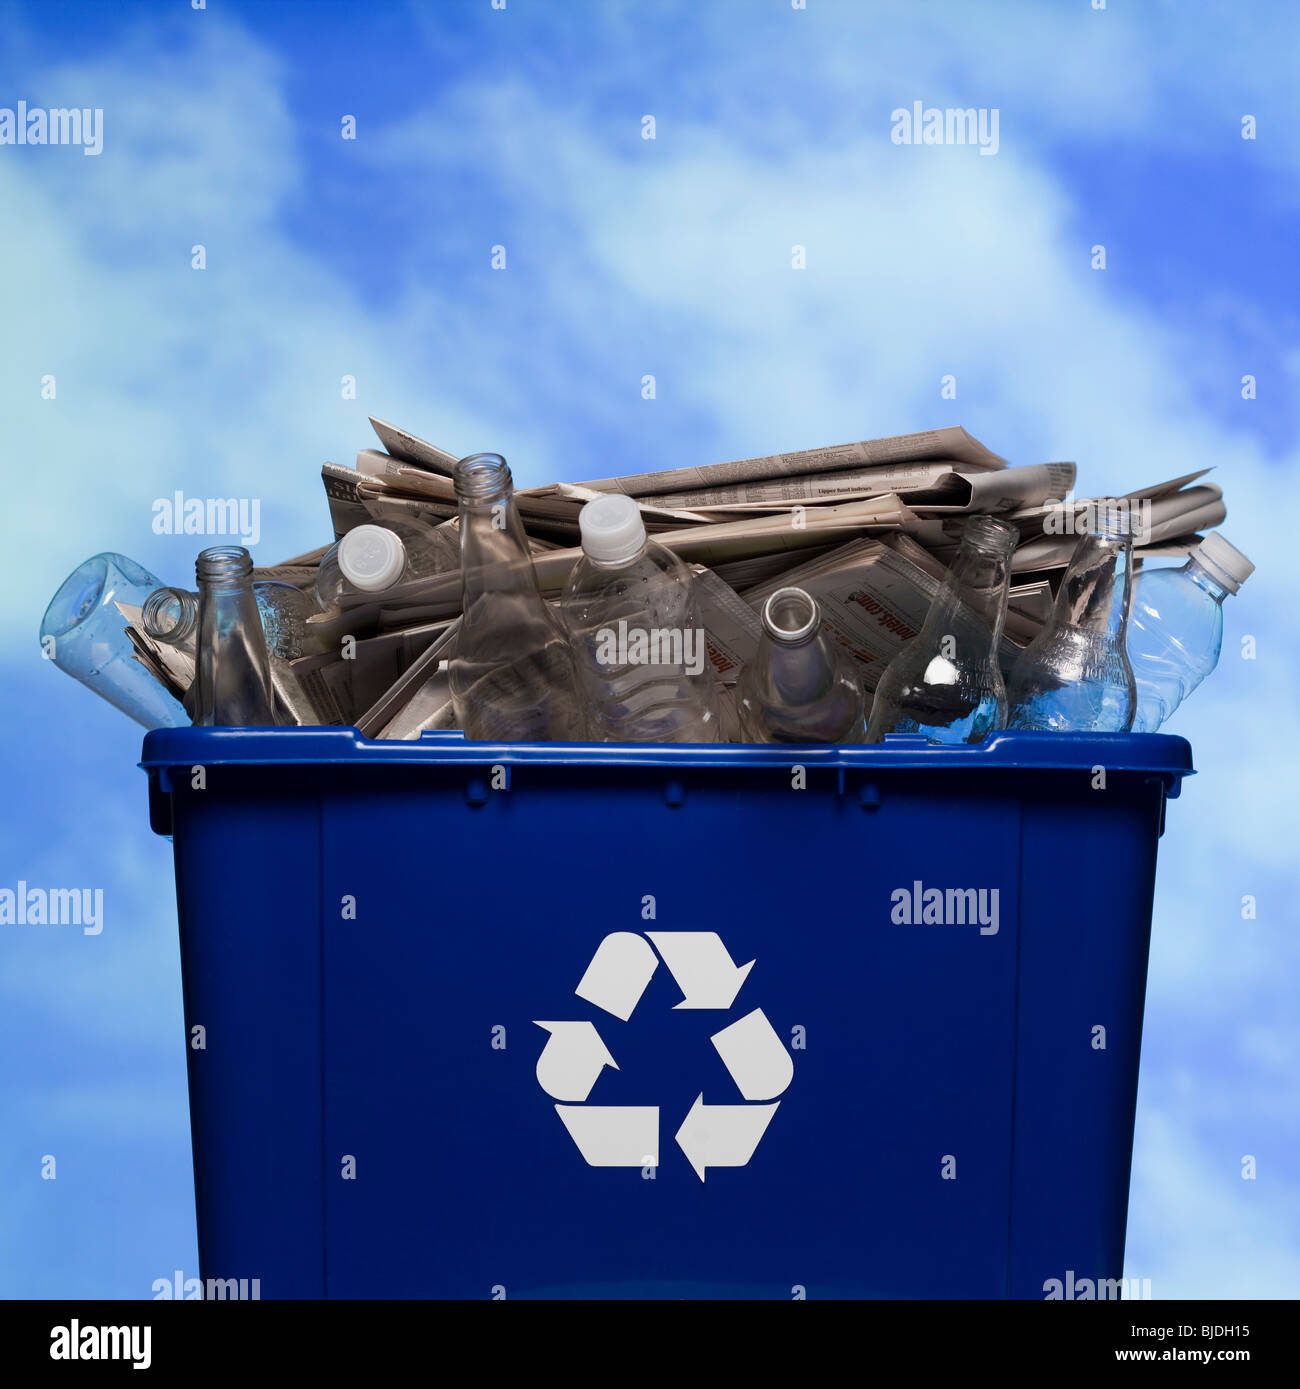 Bac de recyclage complet Banque D'Images